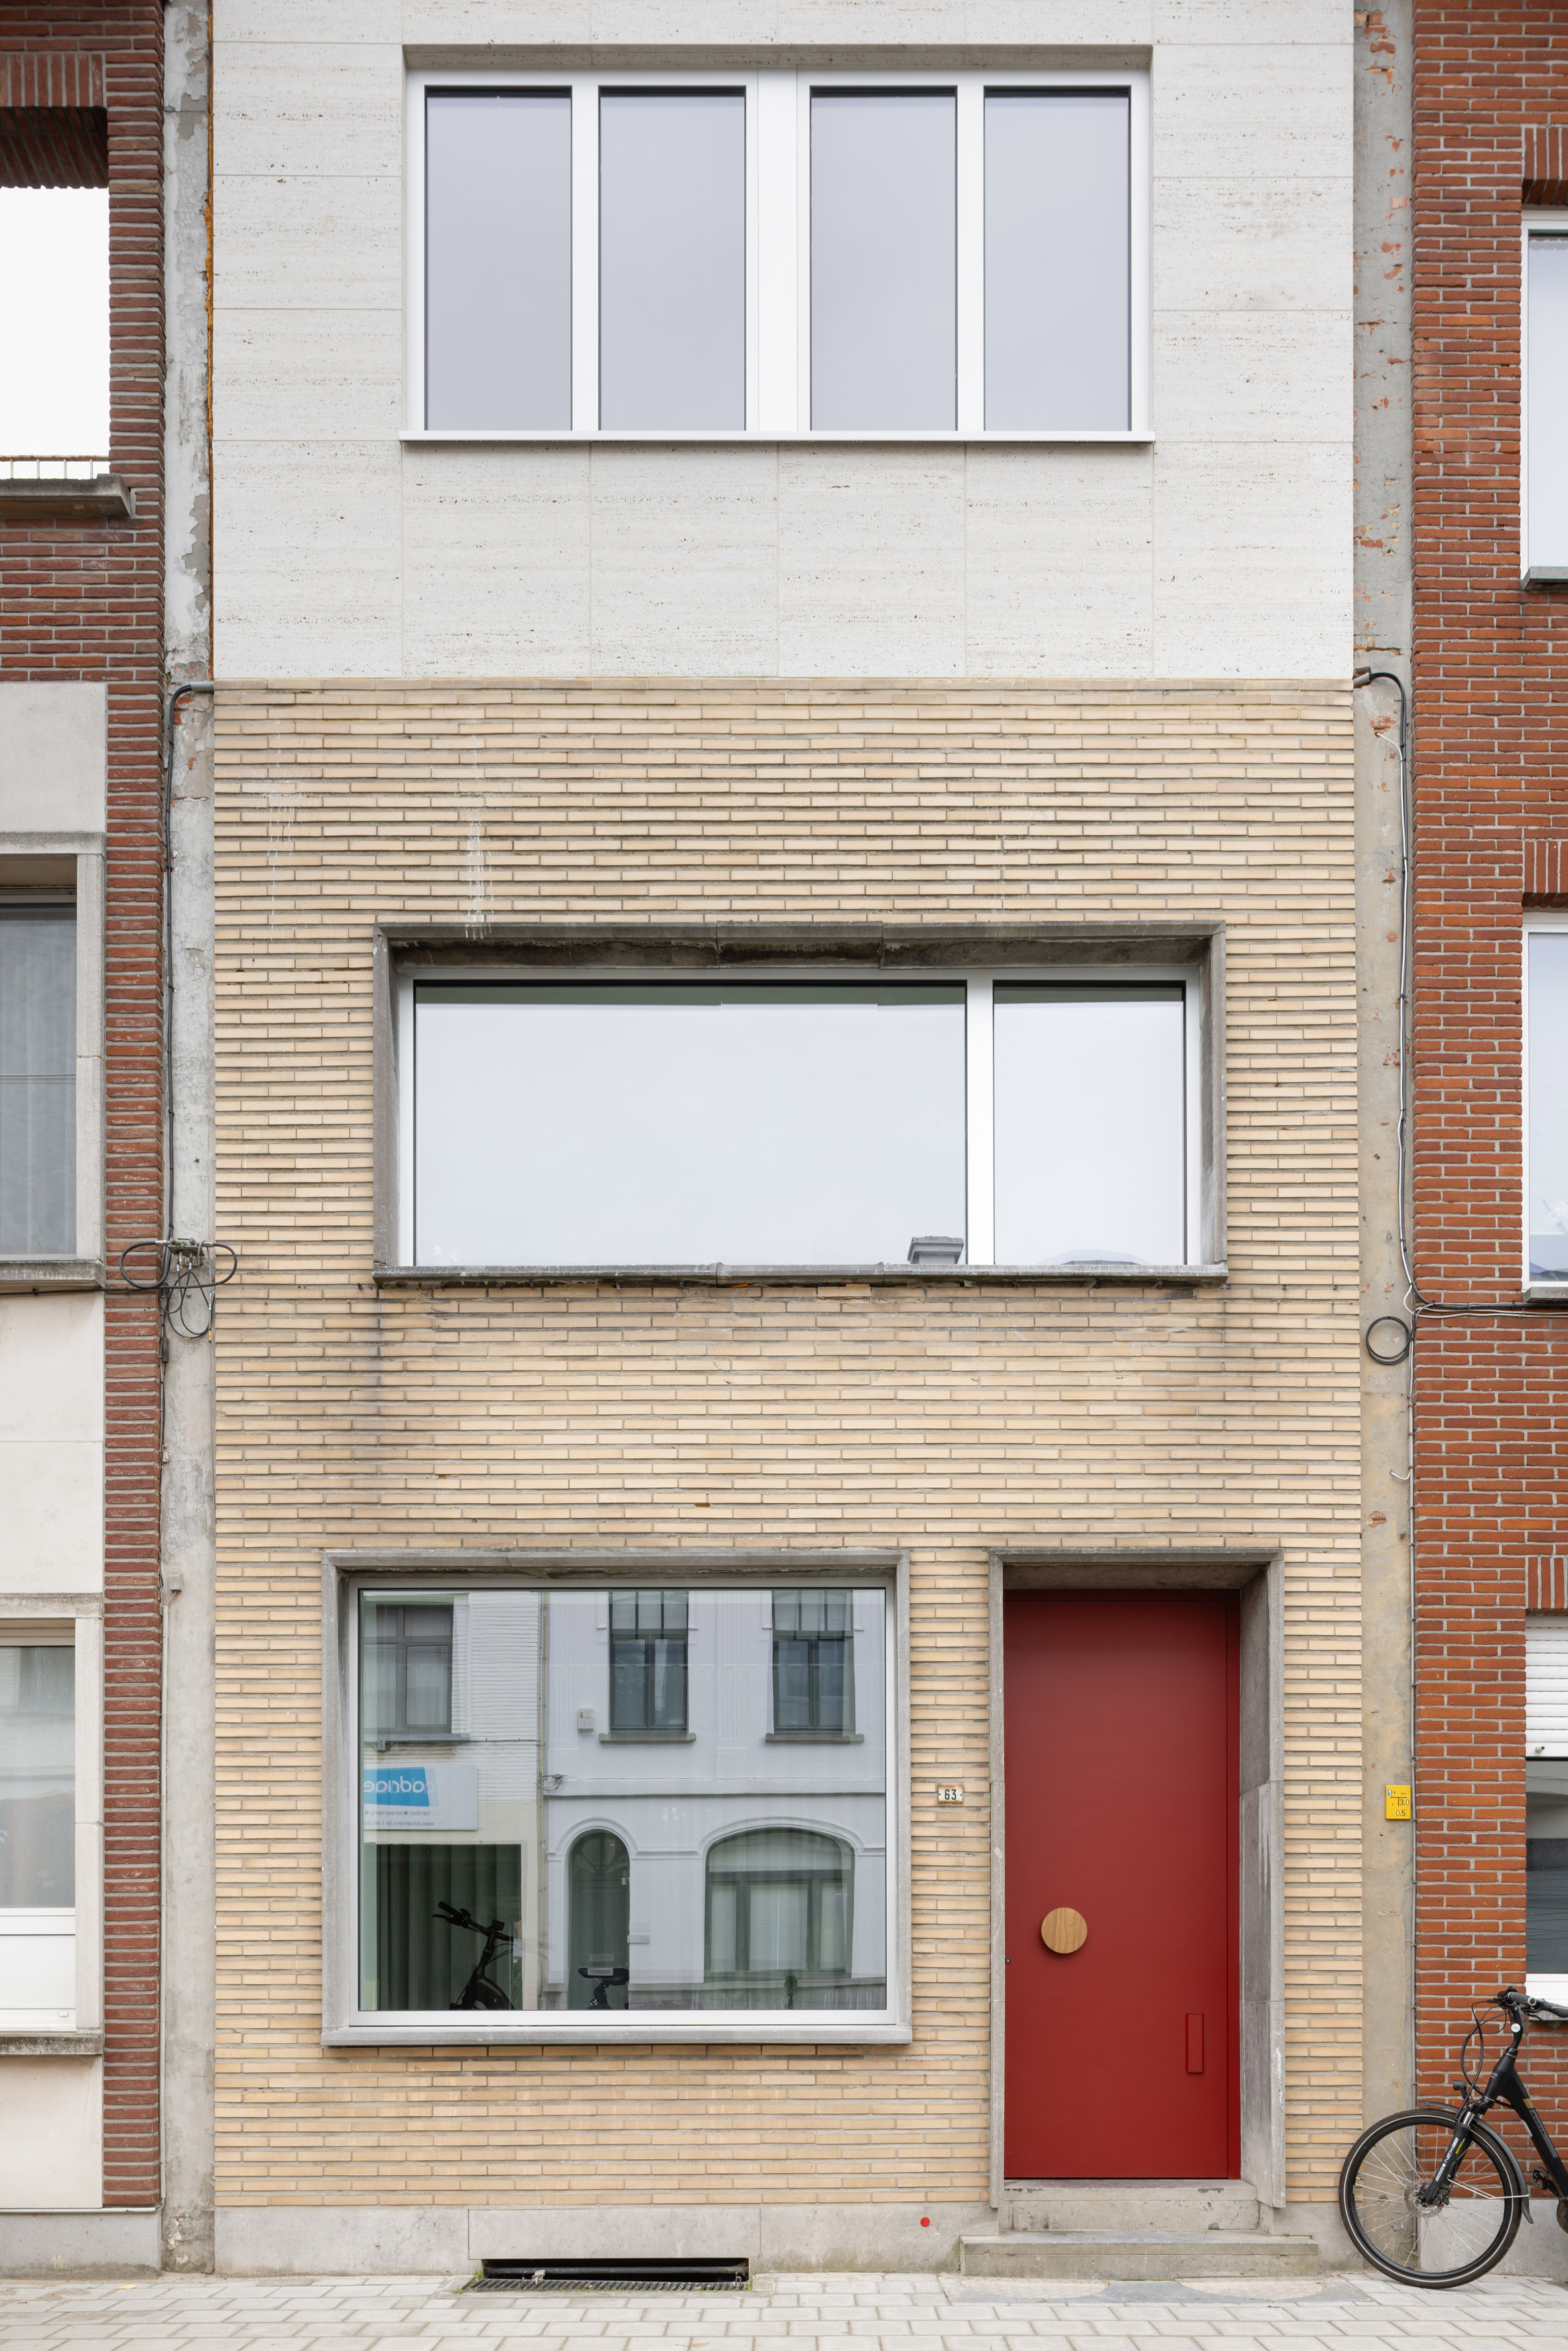 Memo Architectuur围绕混凝土螺旋楼梯组织比利时家庭装修|ART-Arrakis | 建筑室内设计的创新与灵感